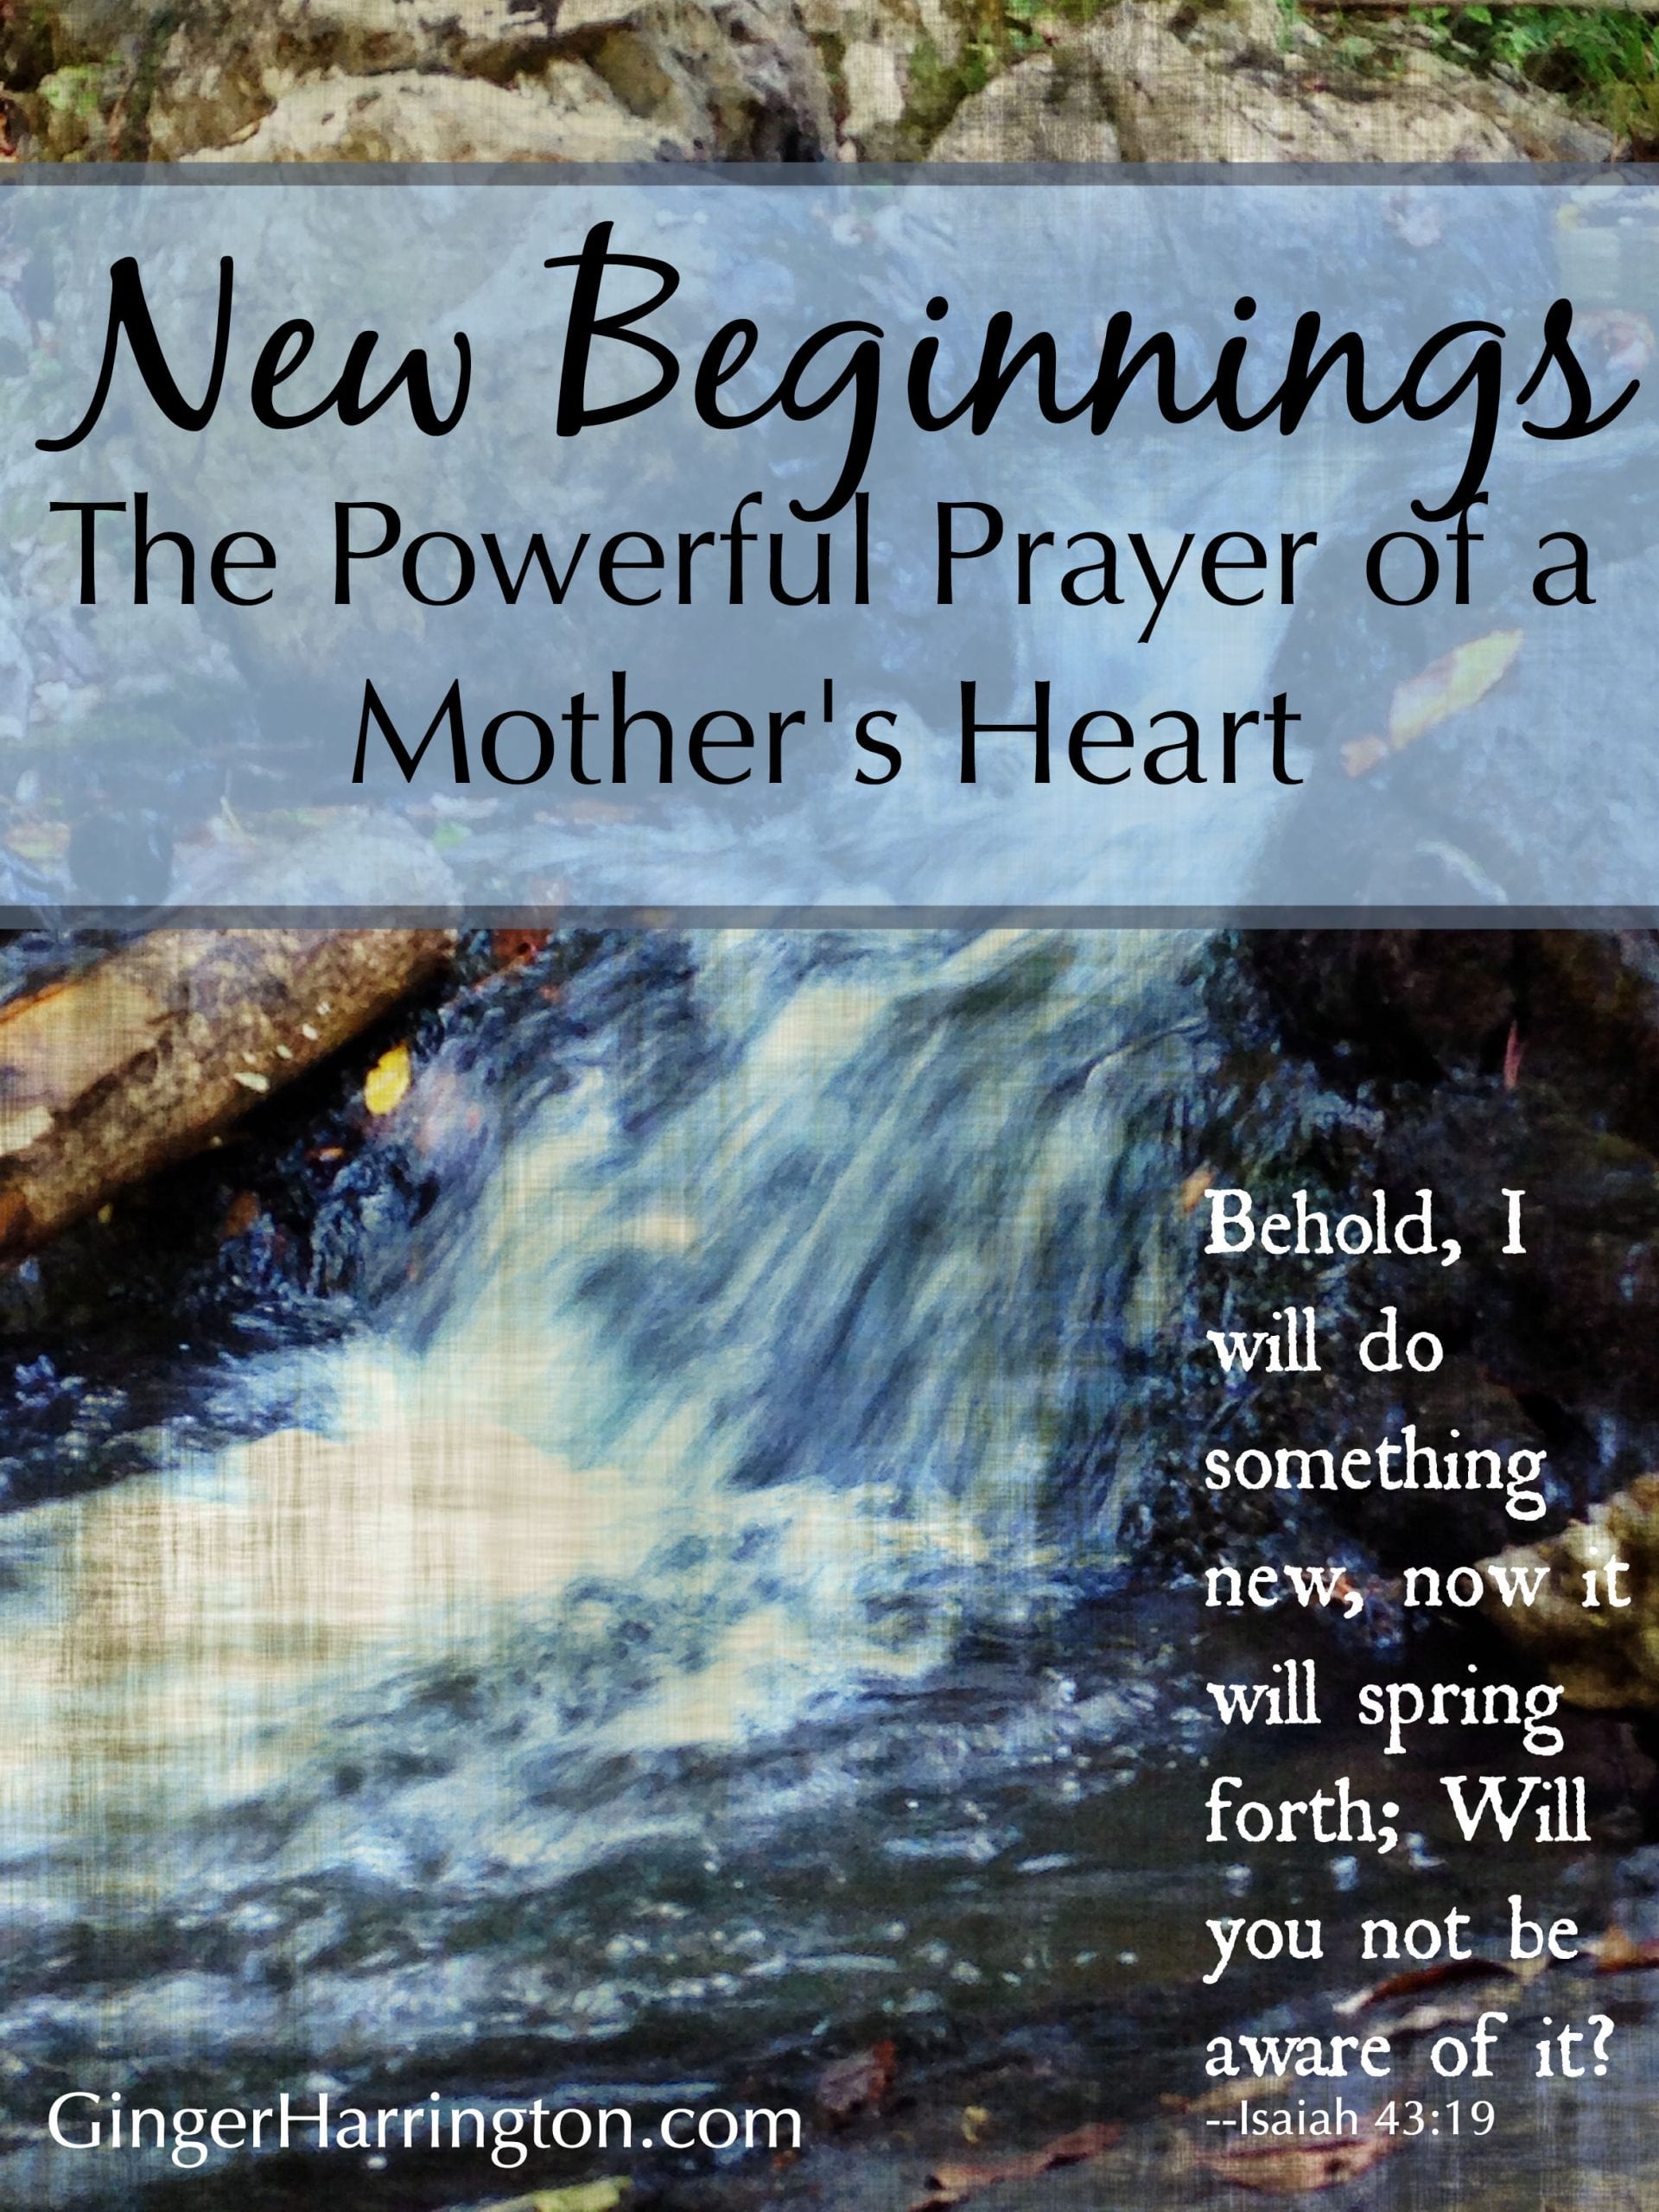 prayer for new beginnings